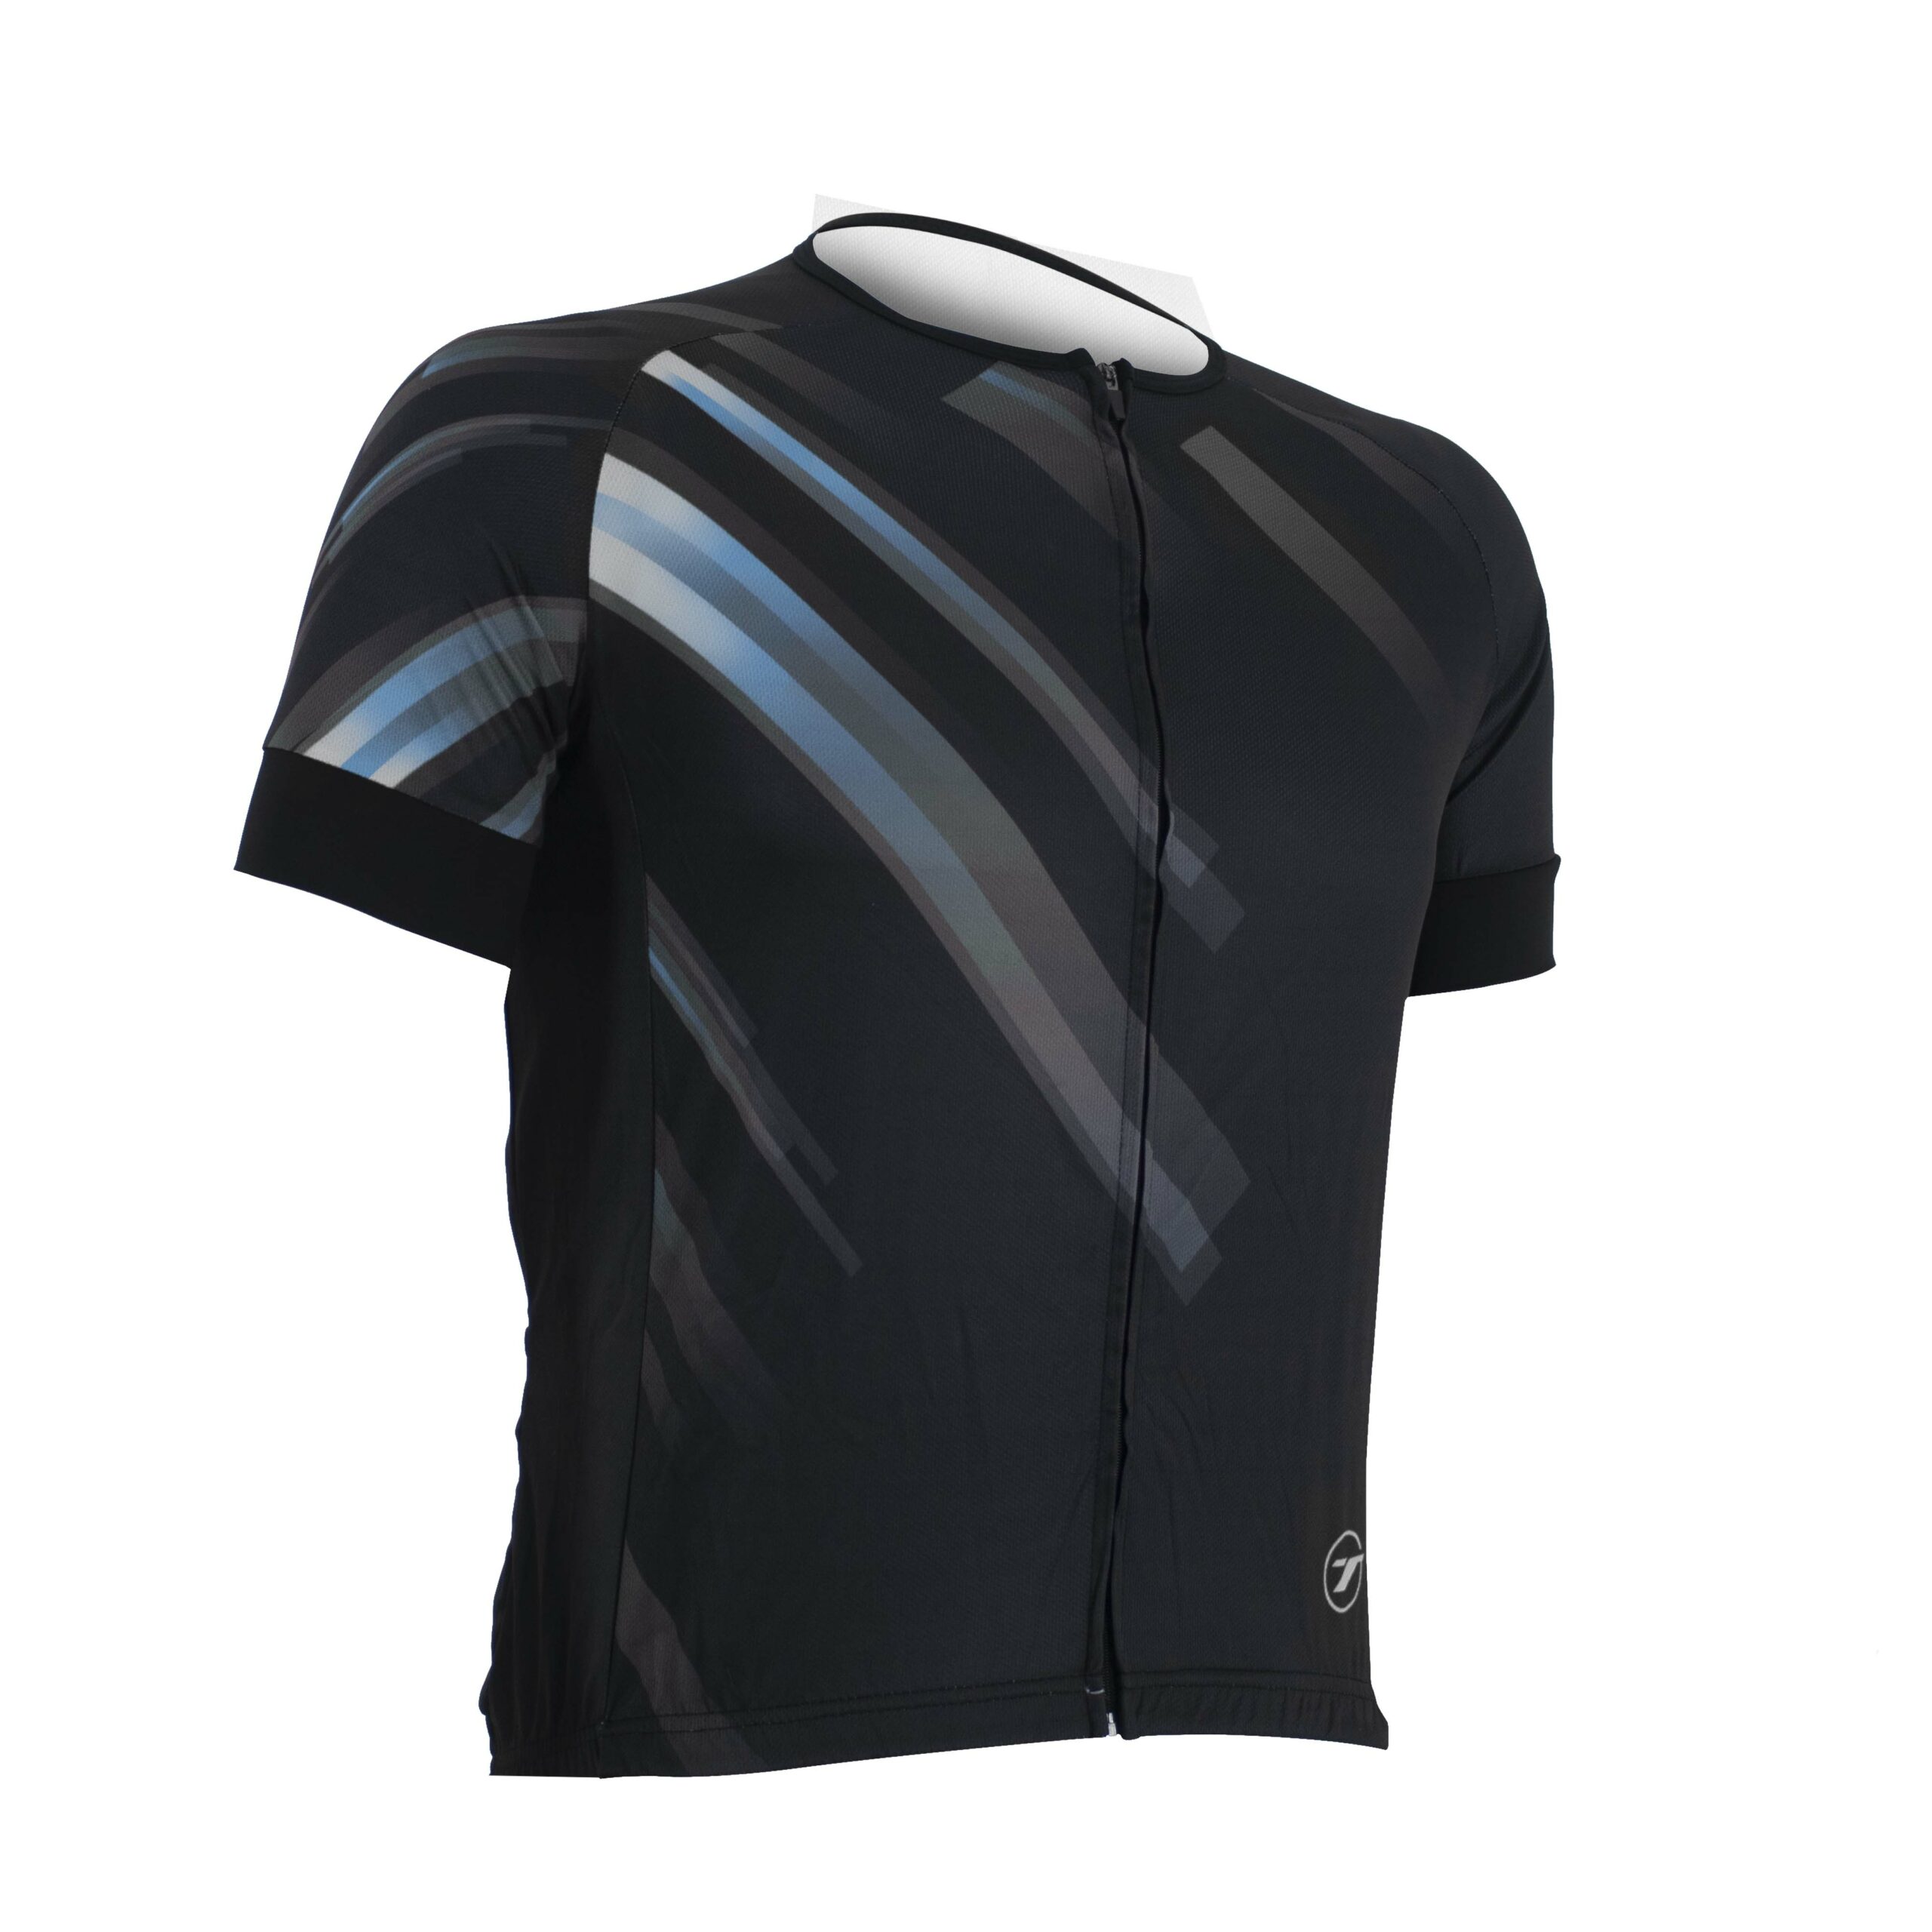 Camisa para ciclismo SUNNY | RIDE LINE - Preto/Cinza, P